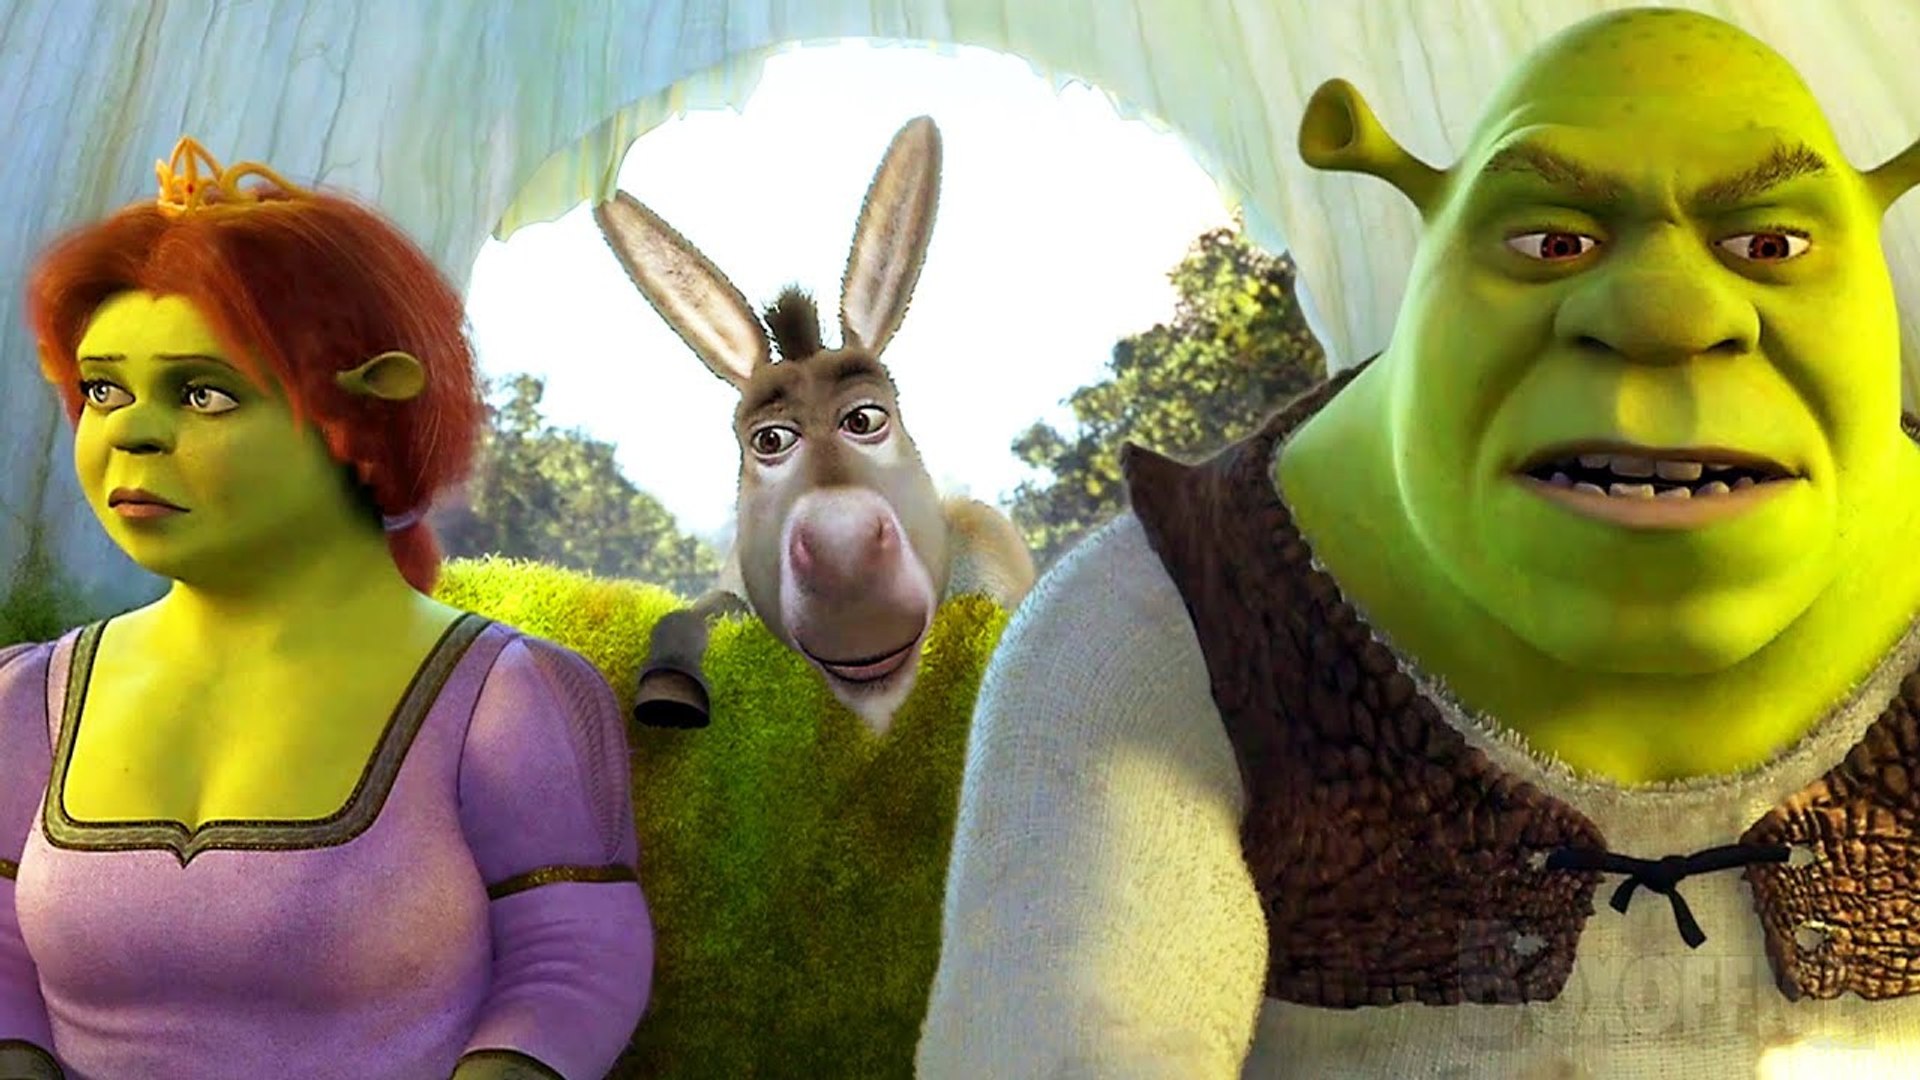 On est presque arrivé ?" | Le voyage interminable de Shrek | Shrek 2 |  Extrait VF - Vidéo Dailymotion